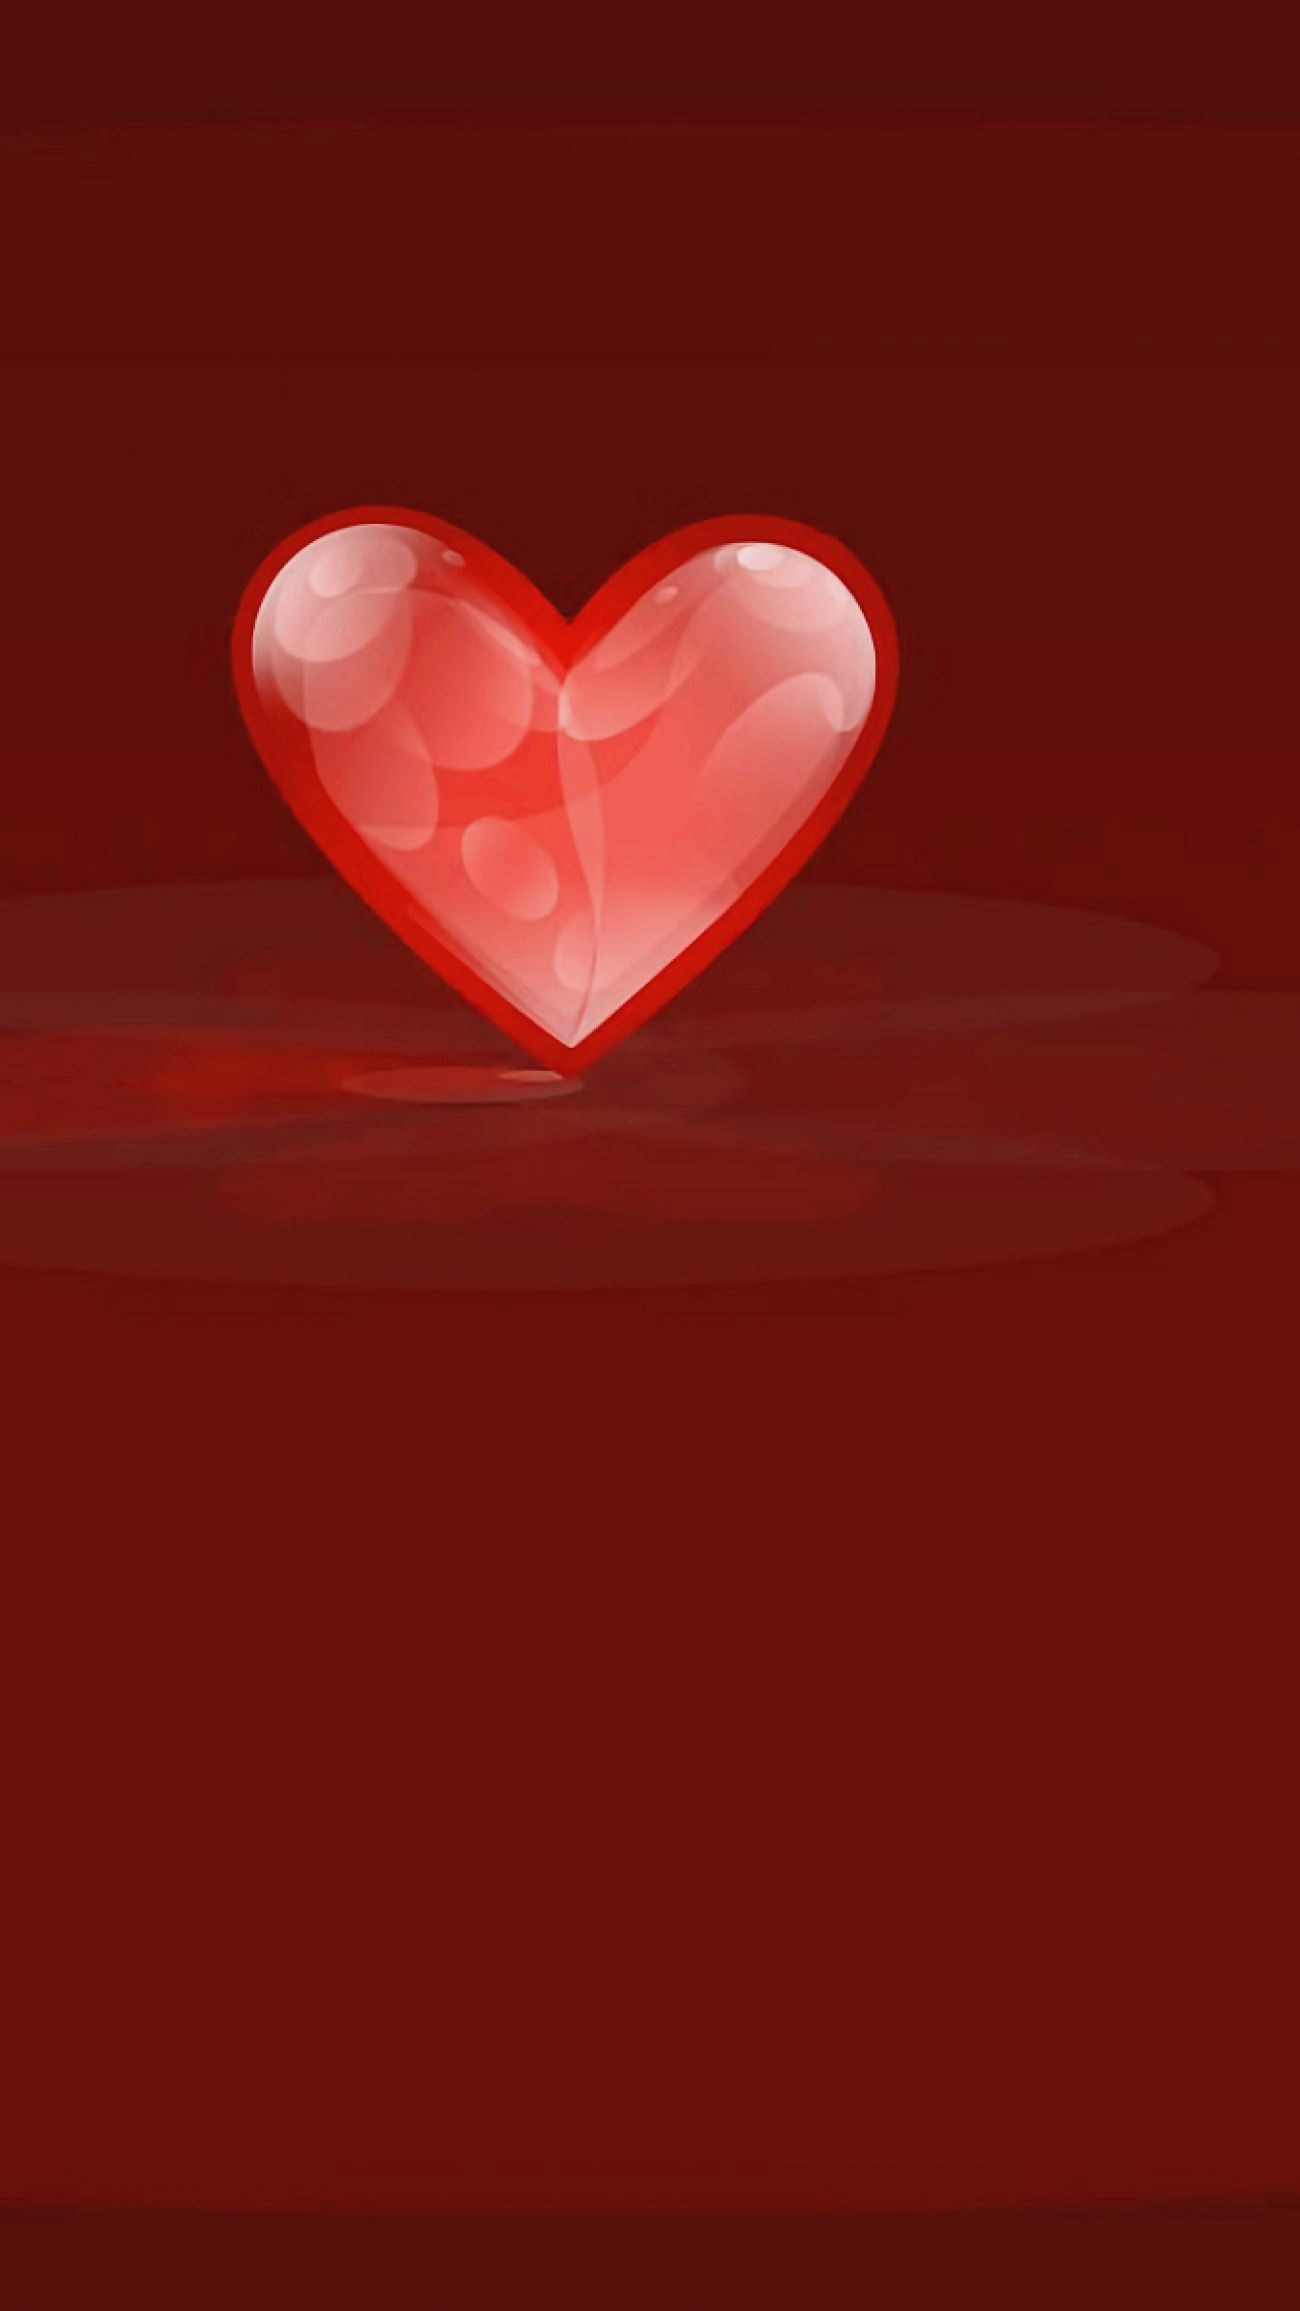 バレンタイン壁紙,赤,心臓,愛,バレンタイン・デー,ピンク